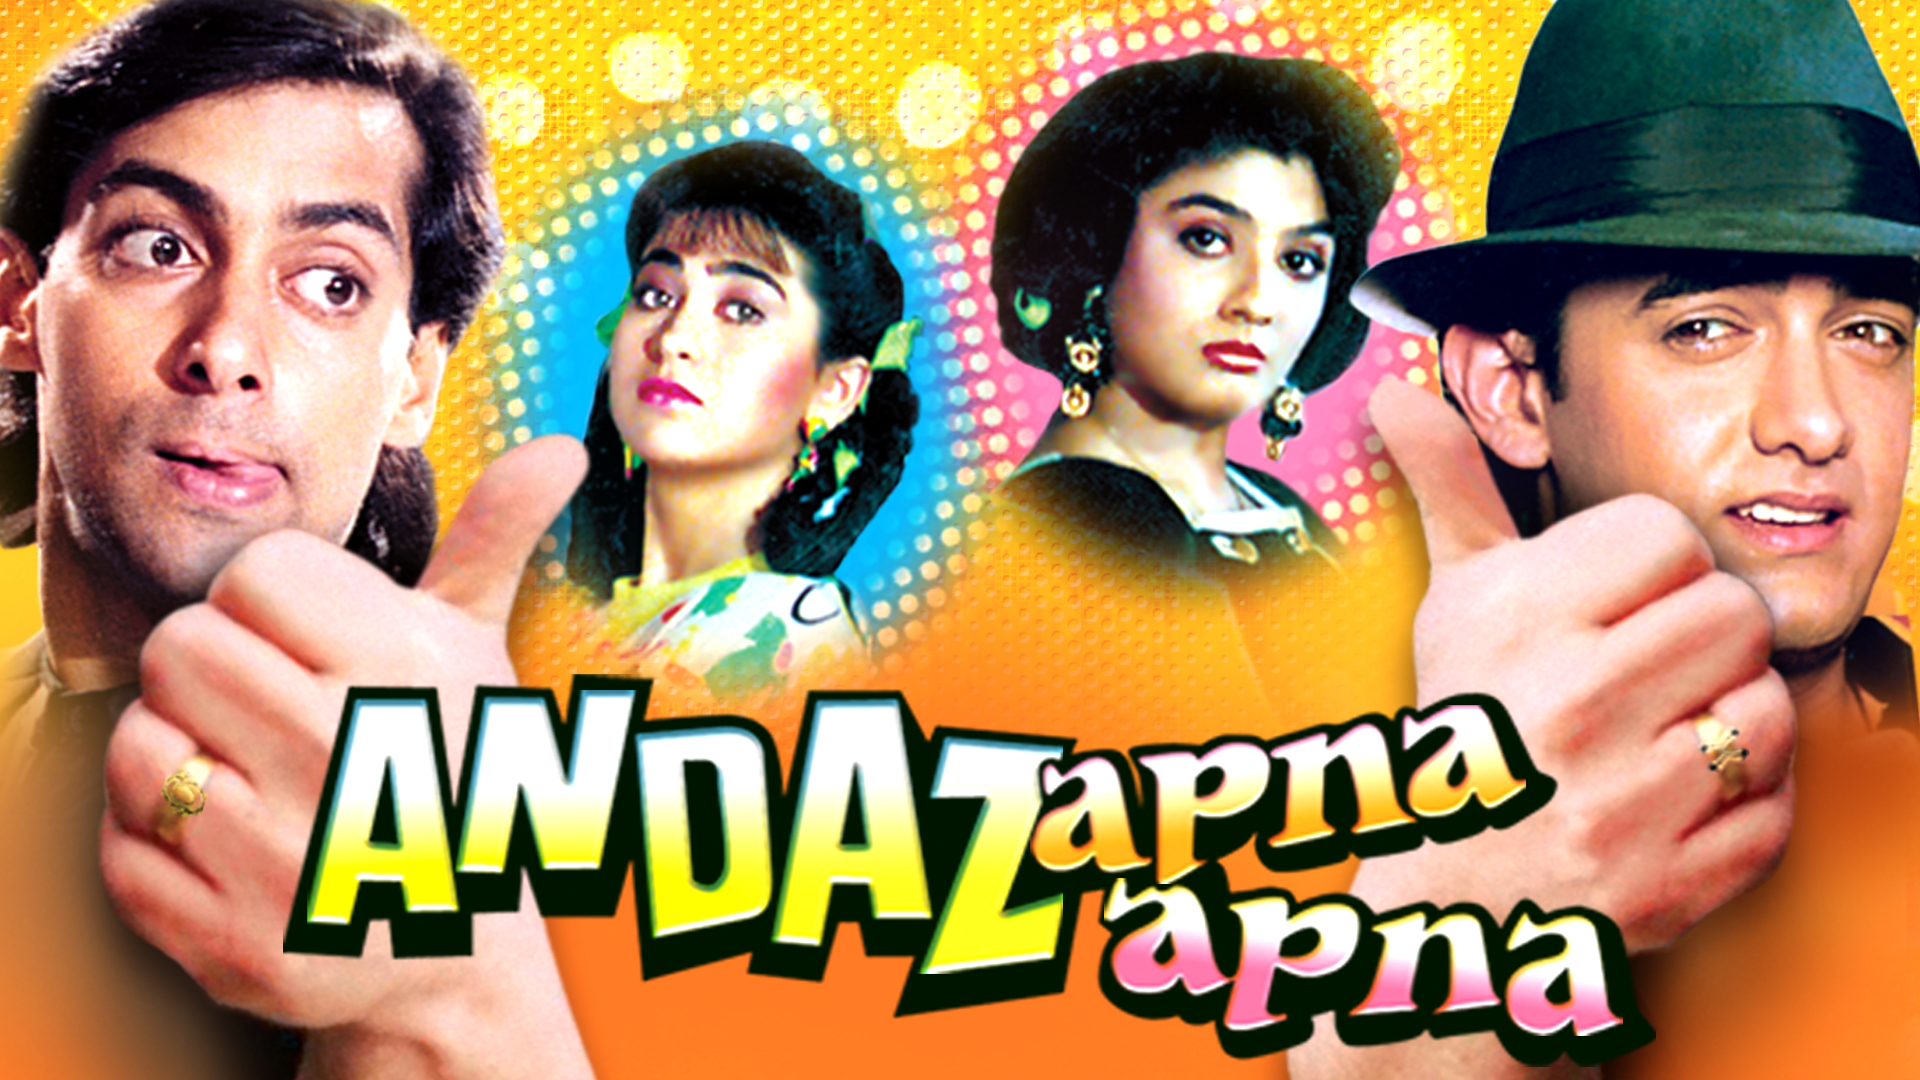 Movie poster for 'Andaz Apna Apna' featuring Salman Khan, Karisma Kapoor, Raveena Tandon, and Aamir Khan